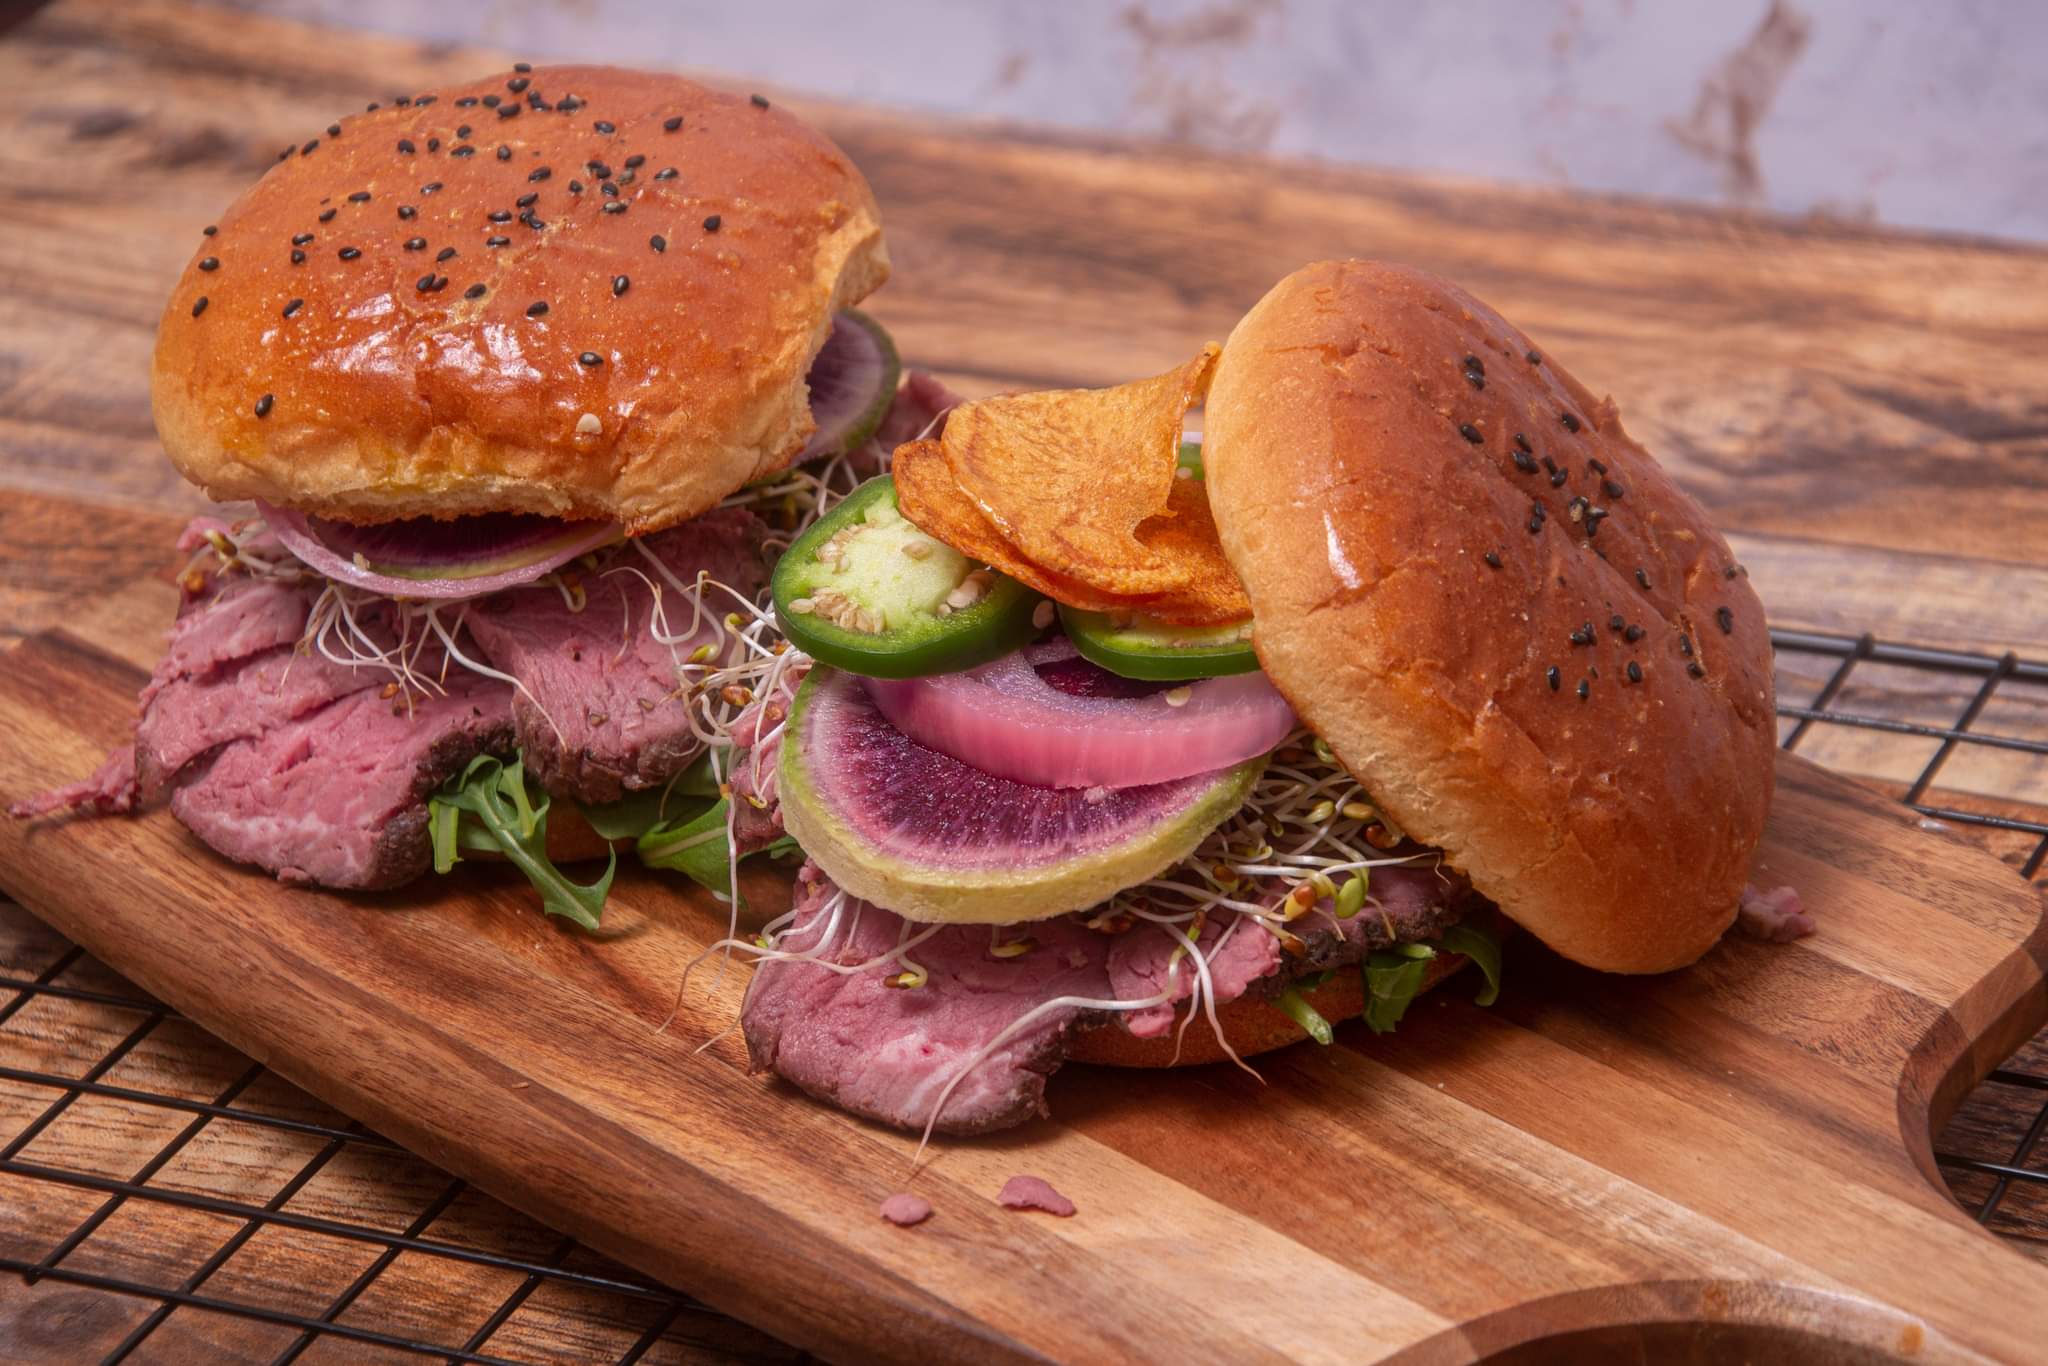 Sous vide roast sandwich - luv4foods.com Sandwiches burgers